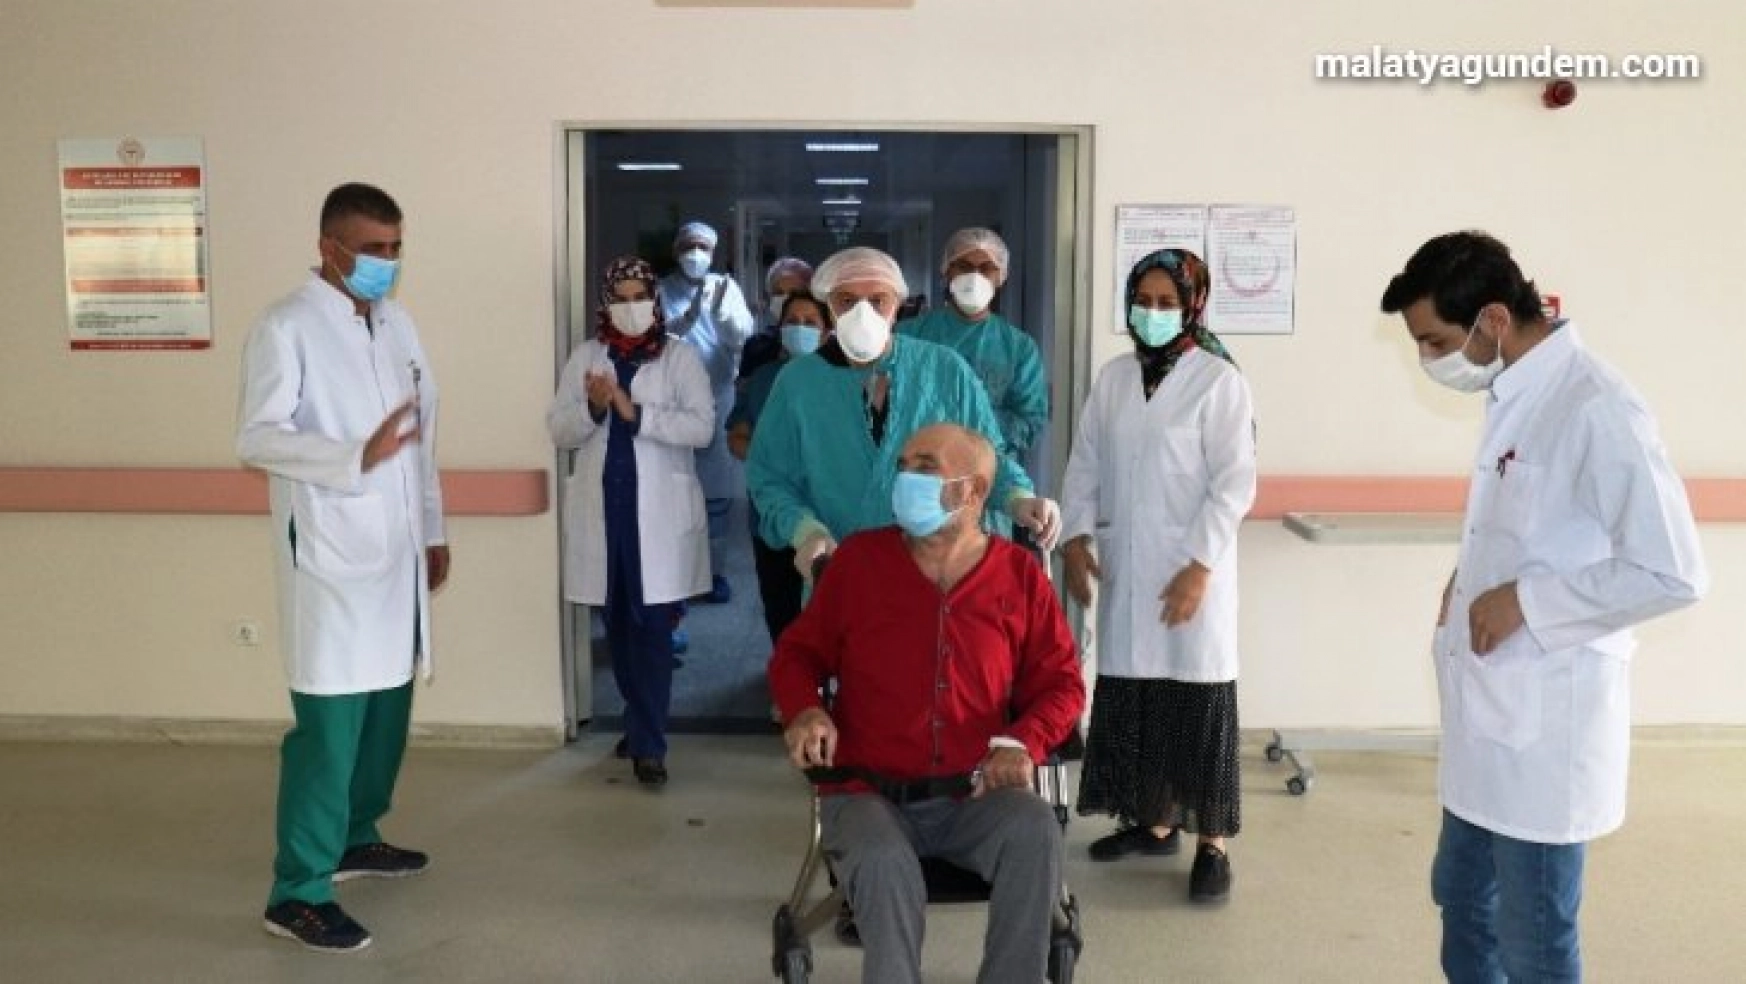 İki kez kalbi duran 62 yaşındaki hasta korona virüsü yenerek taburcu oldu